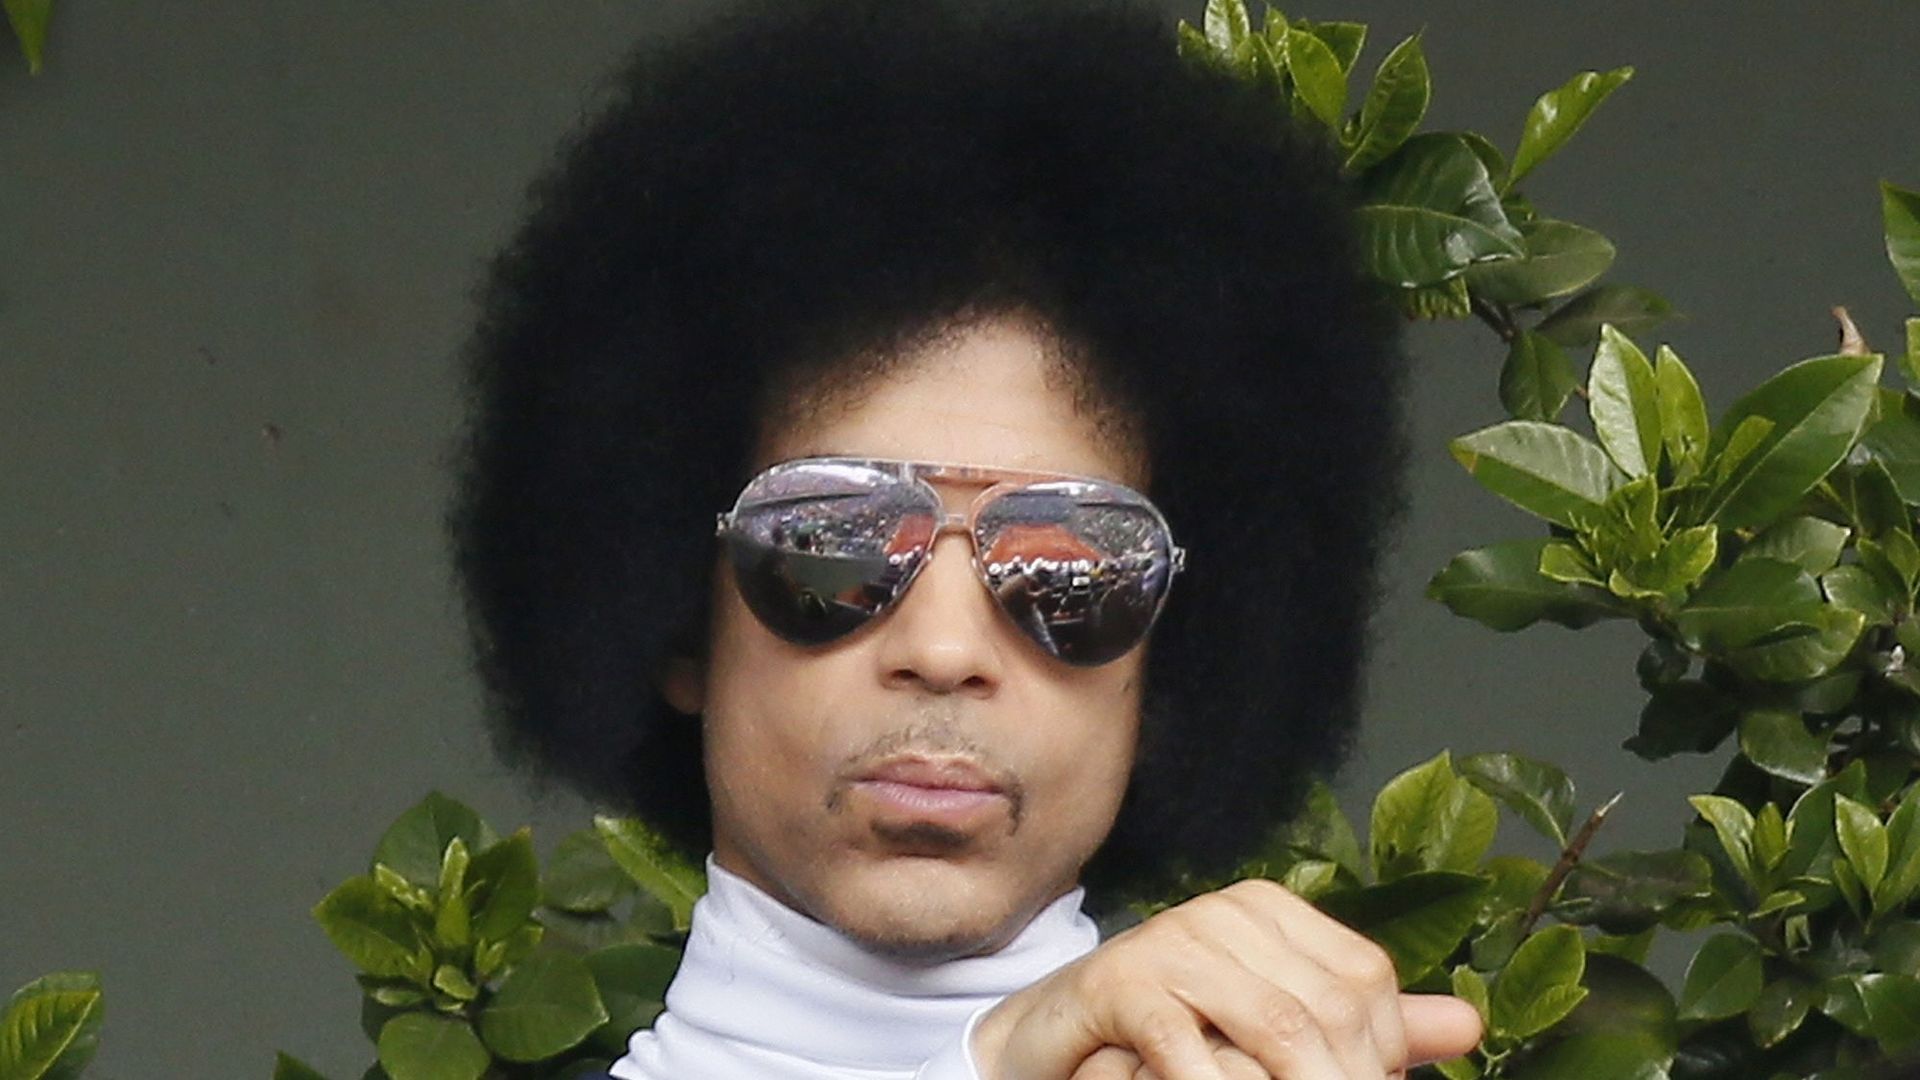 Prince choisit Tidal pour délivrer son nouvel album